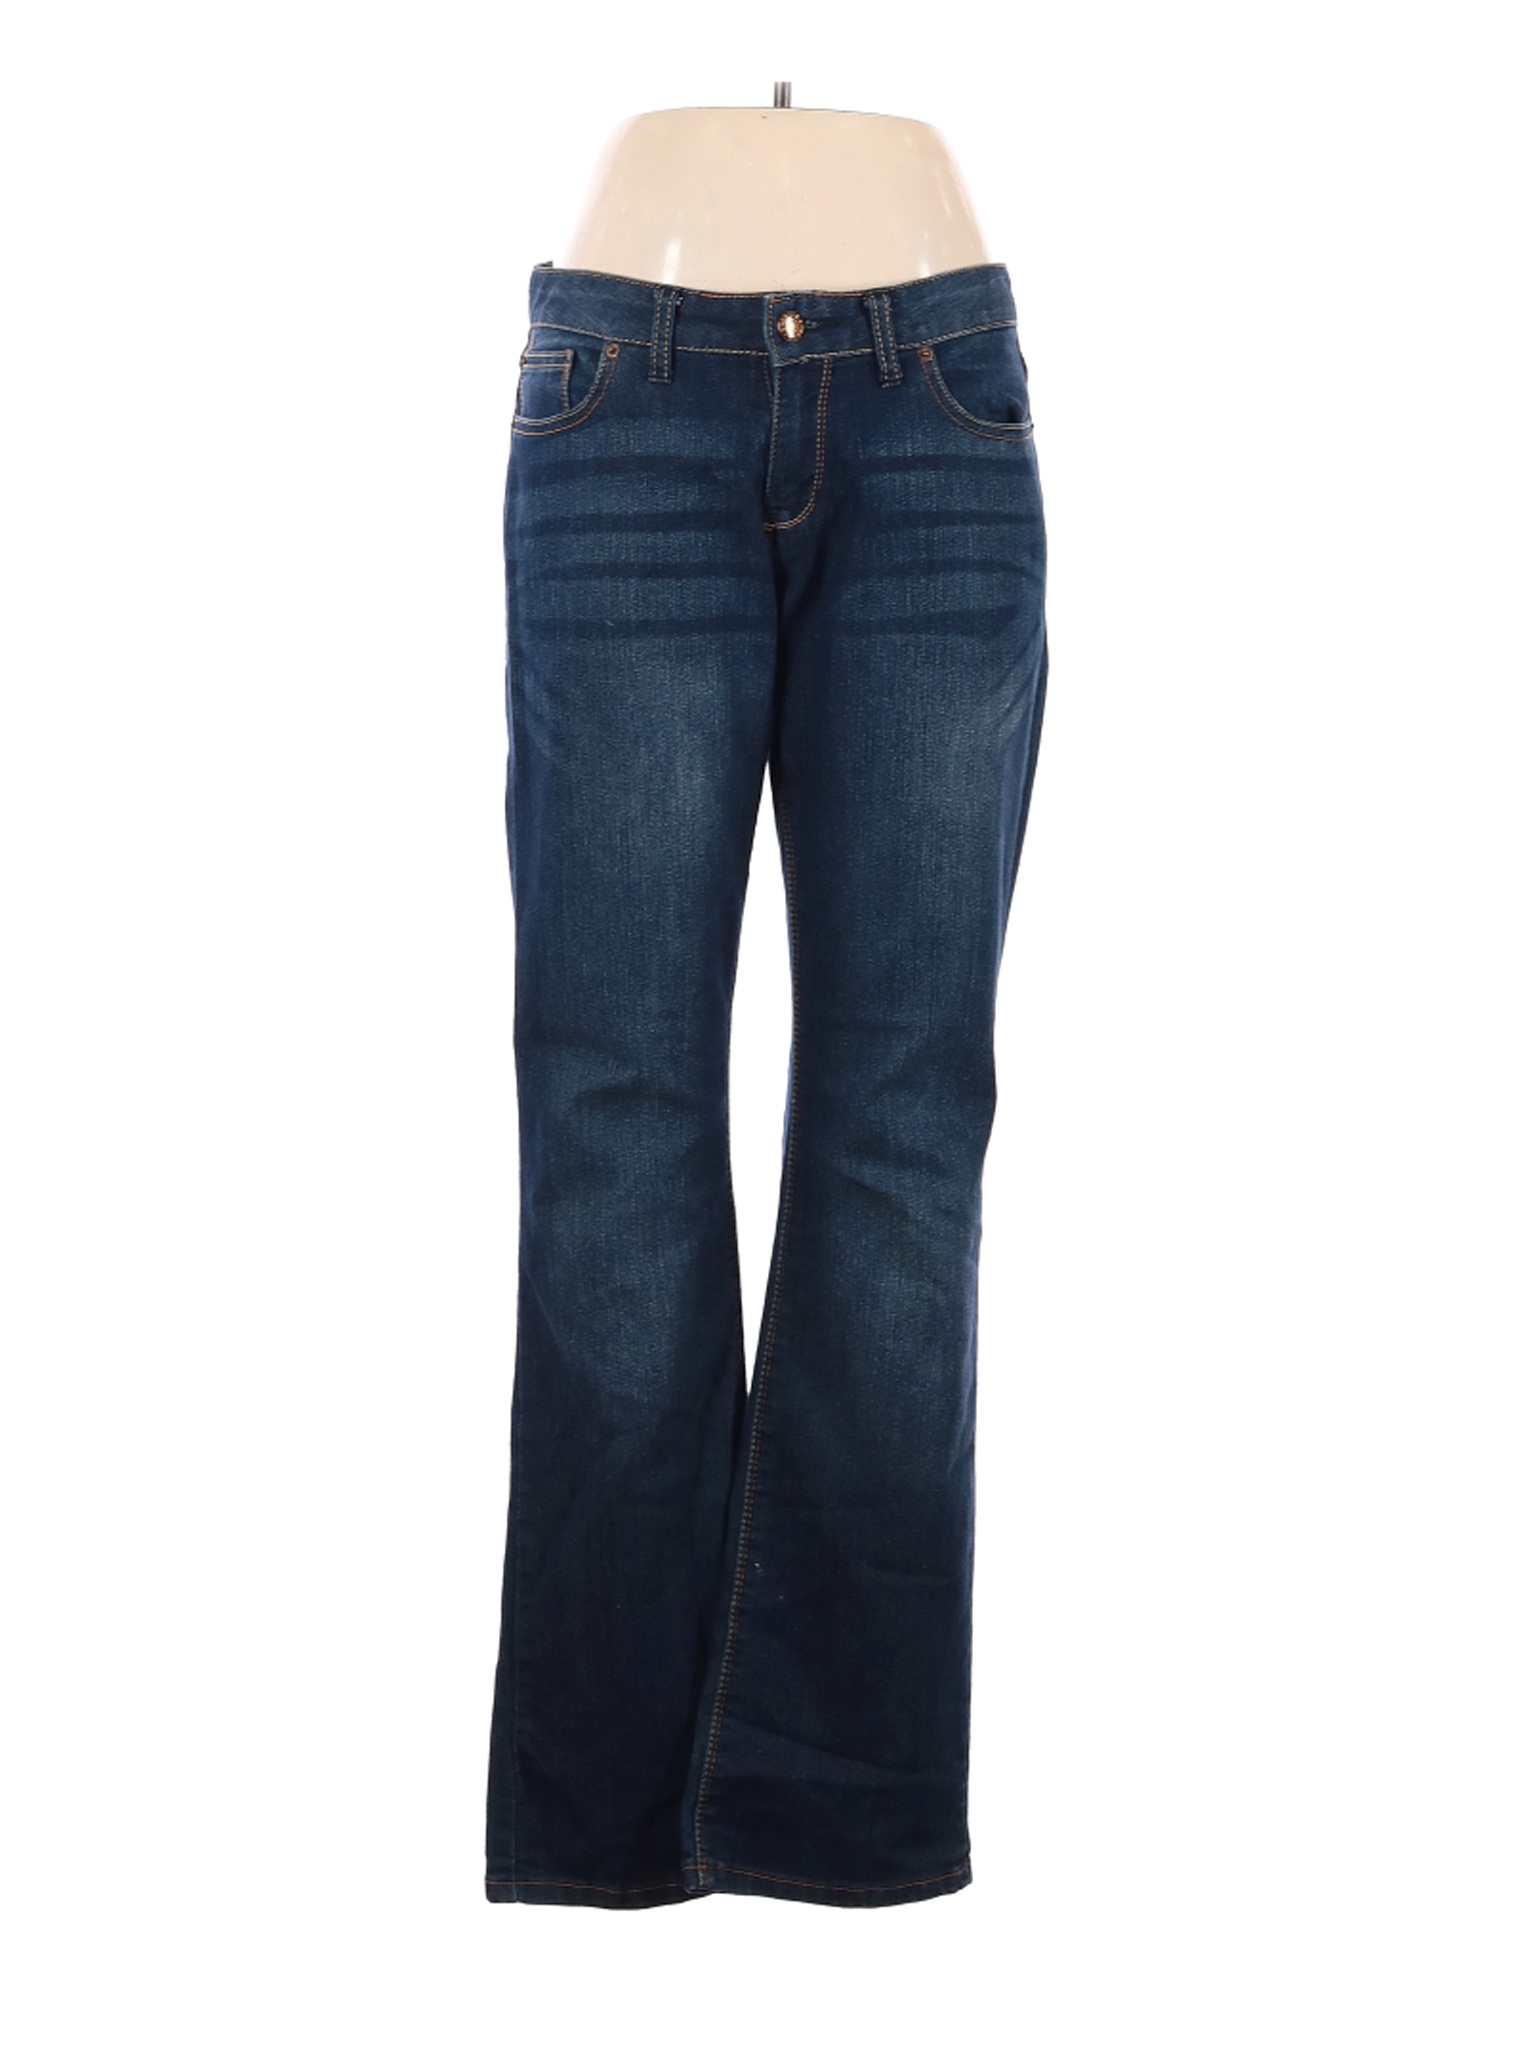 Express Women Blue Jeans 8 | eBay